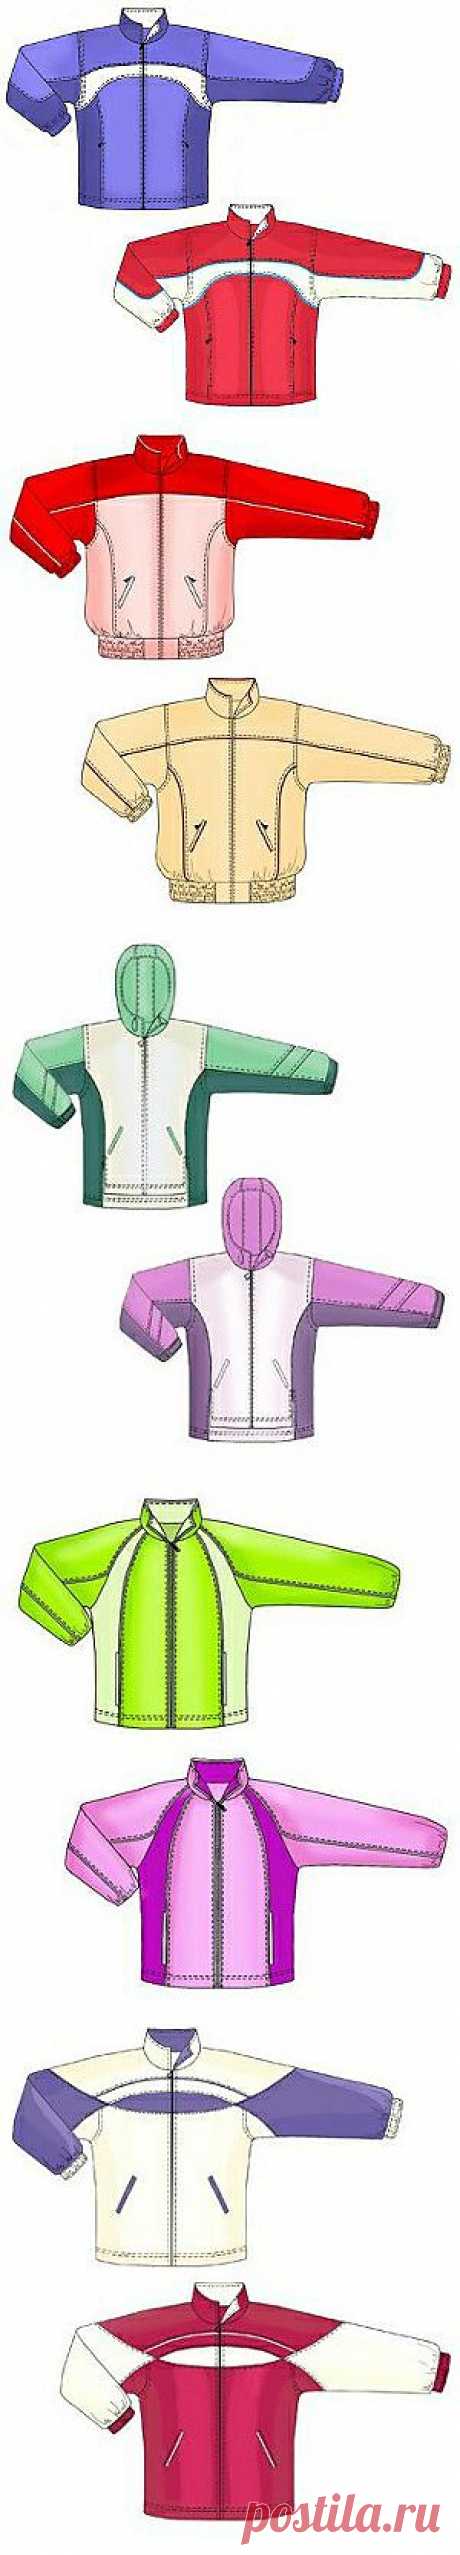 Выкройки на индивидуальные размеры
Выкройки спортивных курток для мальчиков https://latelye.ru/mod-p.php?t=2